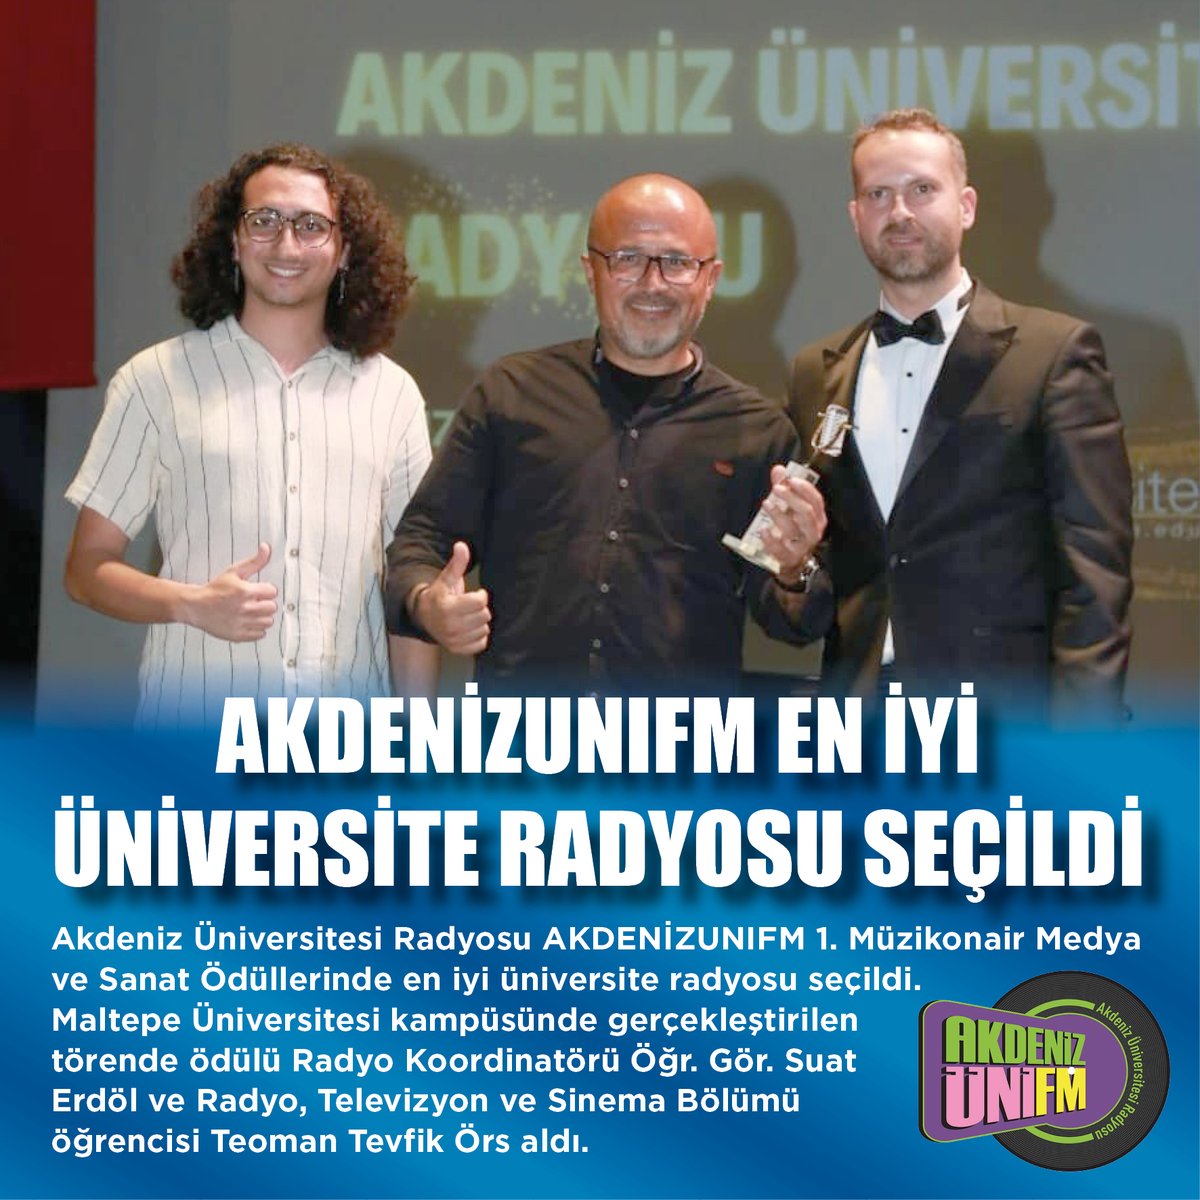 Akdeniz Üniversitesi Radyosu AKDENİZUNIFM 1. Müzikonair Medya ve Sanat Ödüllerinde en iyi üniversite radyosu seçildi. 🔗akdeniz.edu.tr/tr/haber/akden…